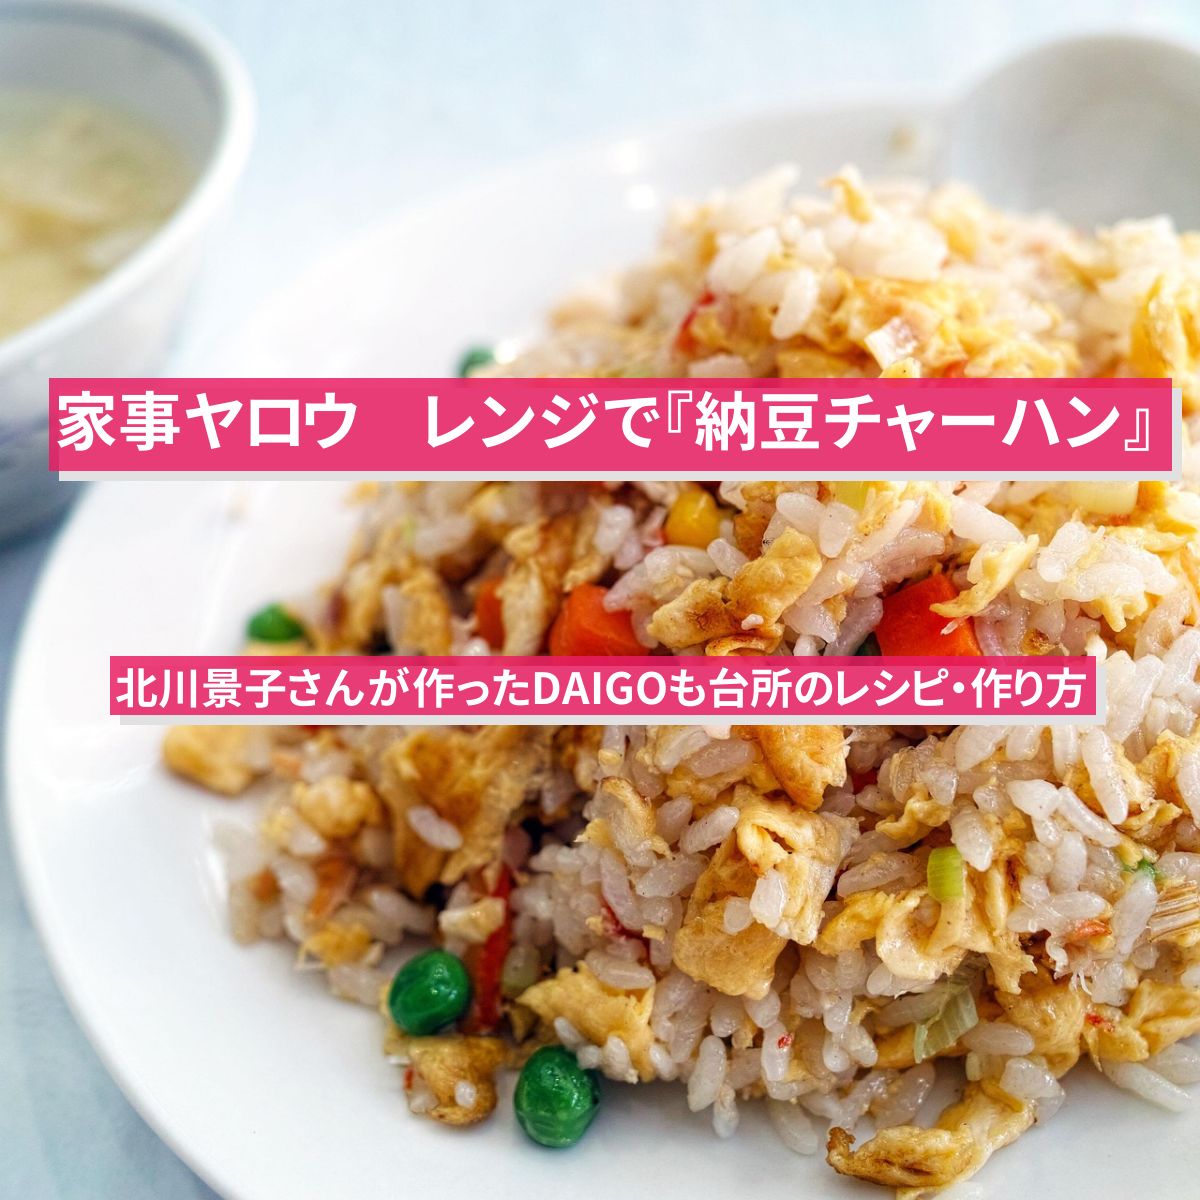 【家事ヤロウ】レンジで『納豆チャーハン』北川景子さんが作ったDAIGOも台所のレシピ・作り方